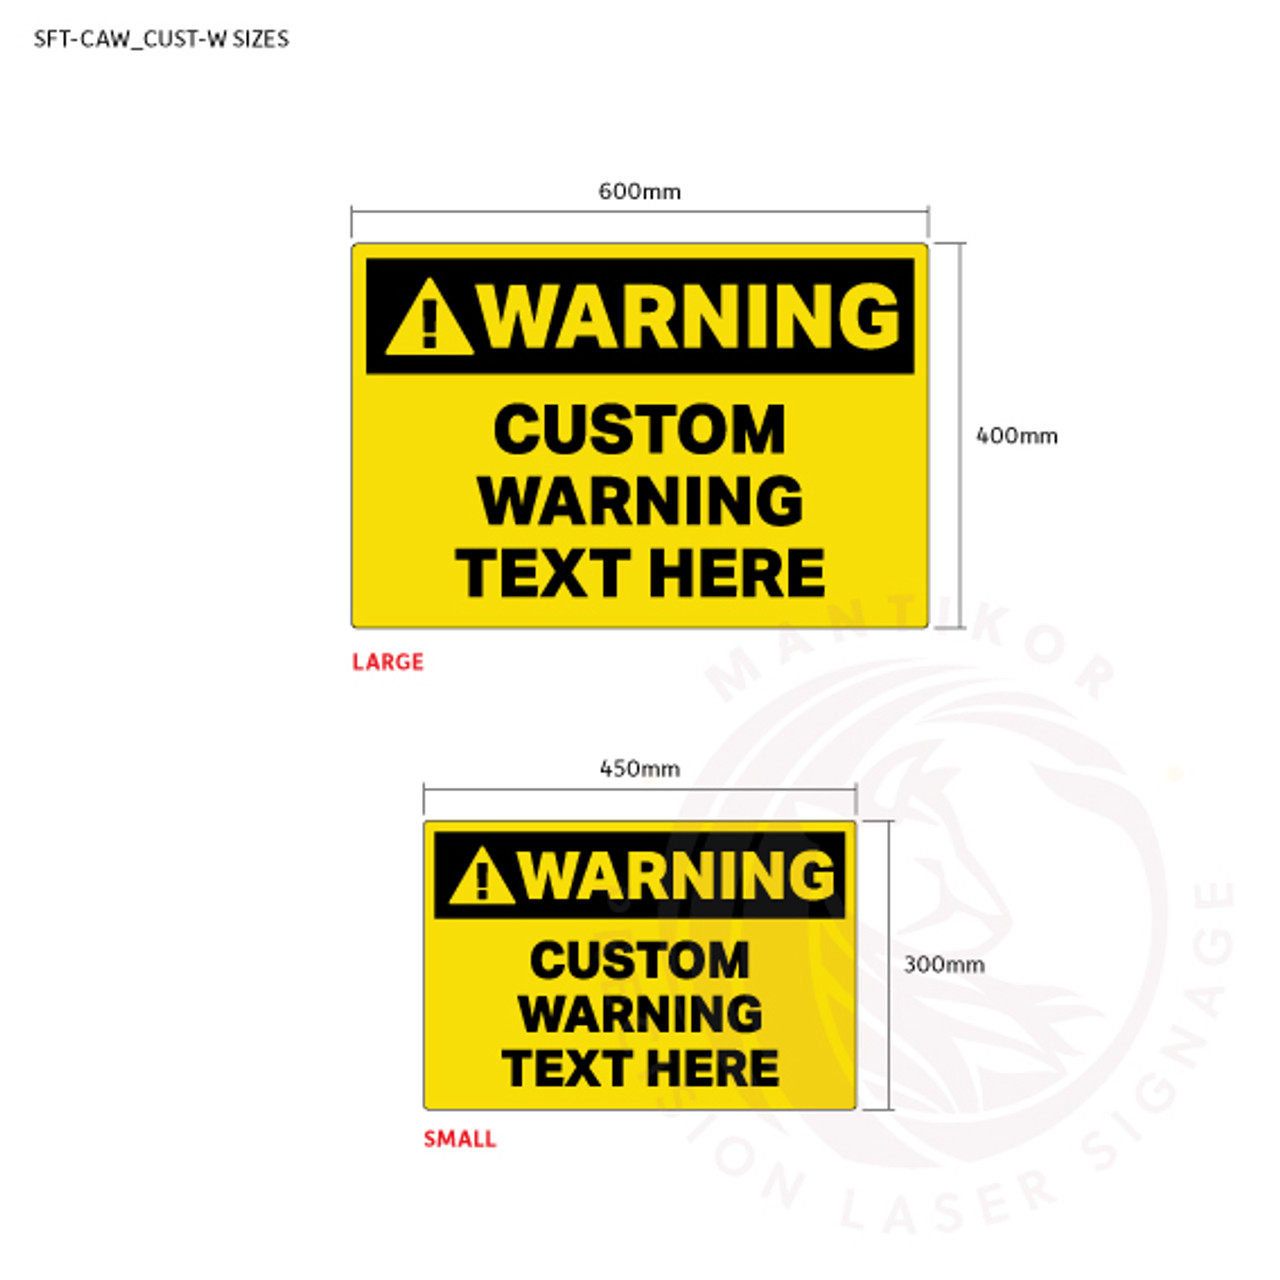 Custom Warning Signage - sign sizes